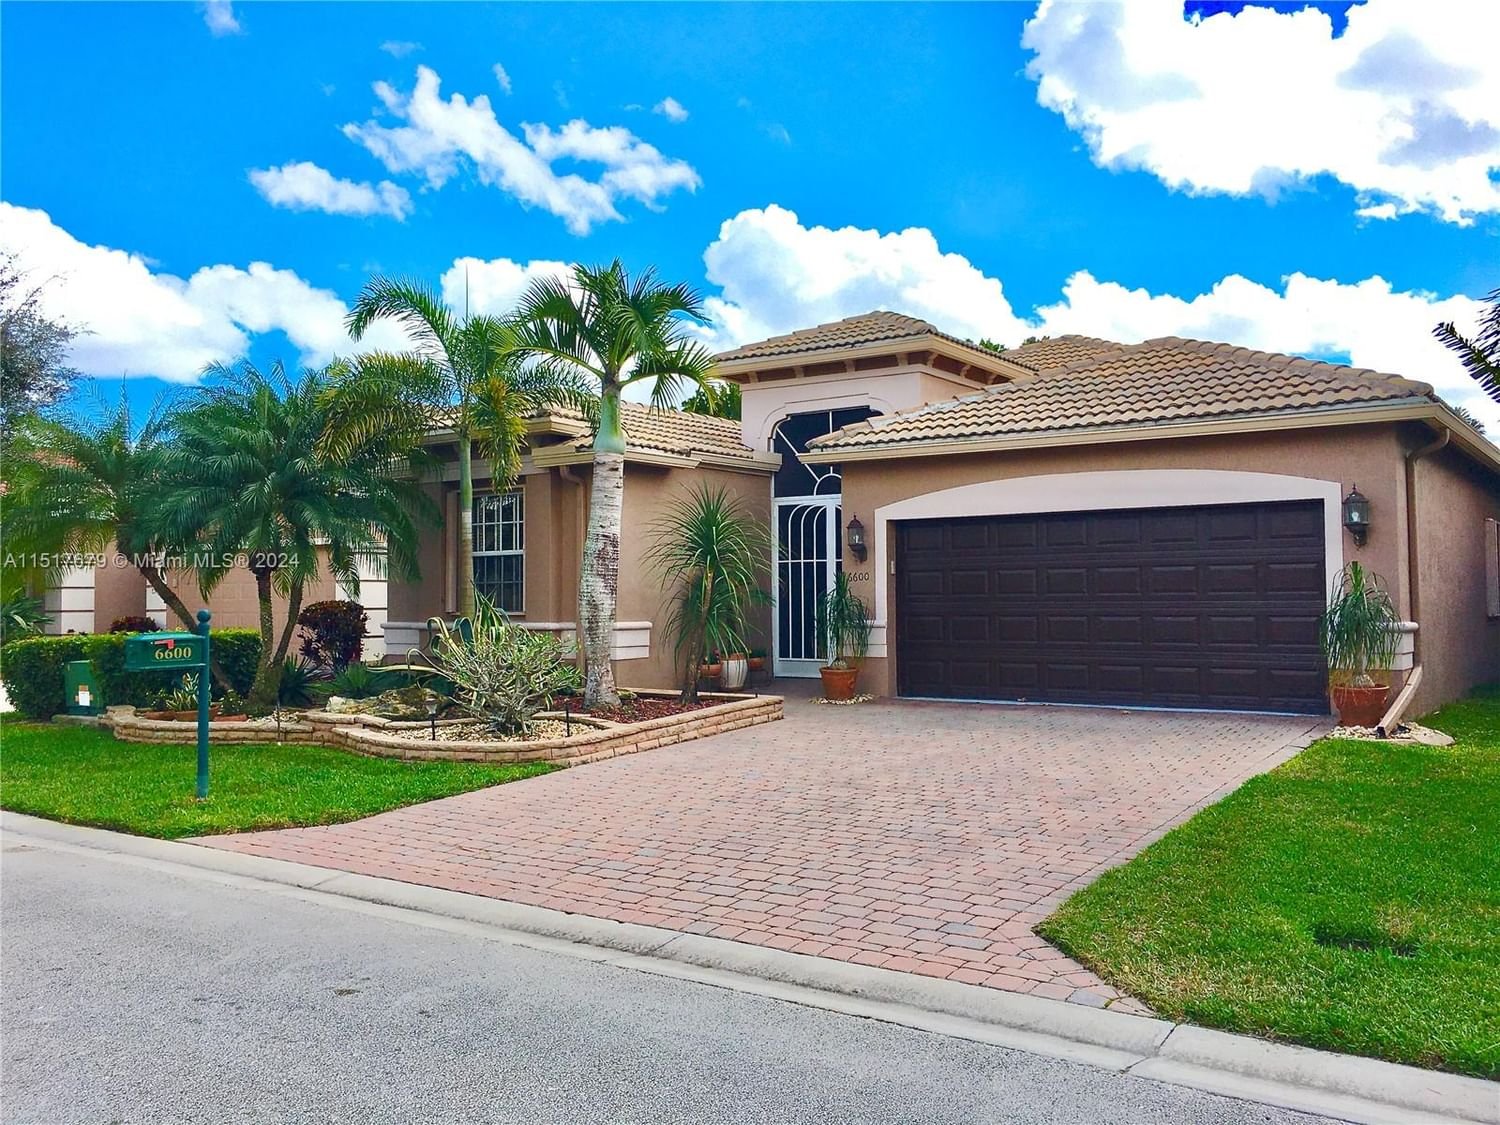 Real estate property located at 6600 Pisano Dr, Palm Beach County, VILLAGGIO, Lake Worth, FL